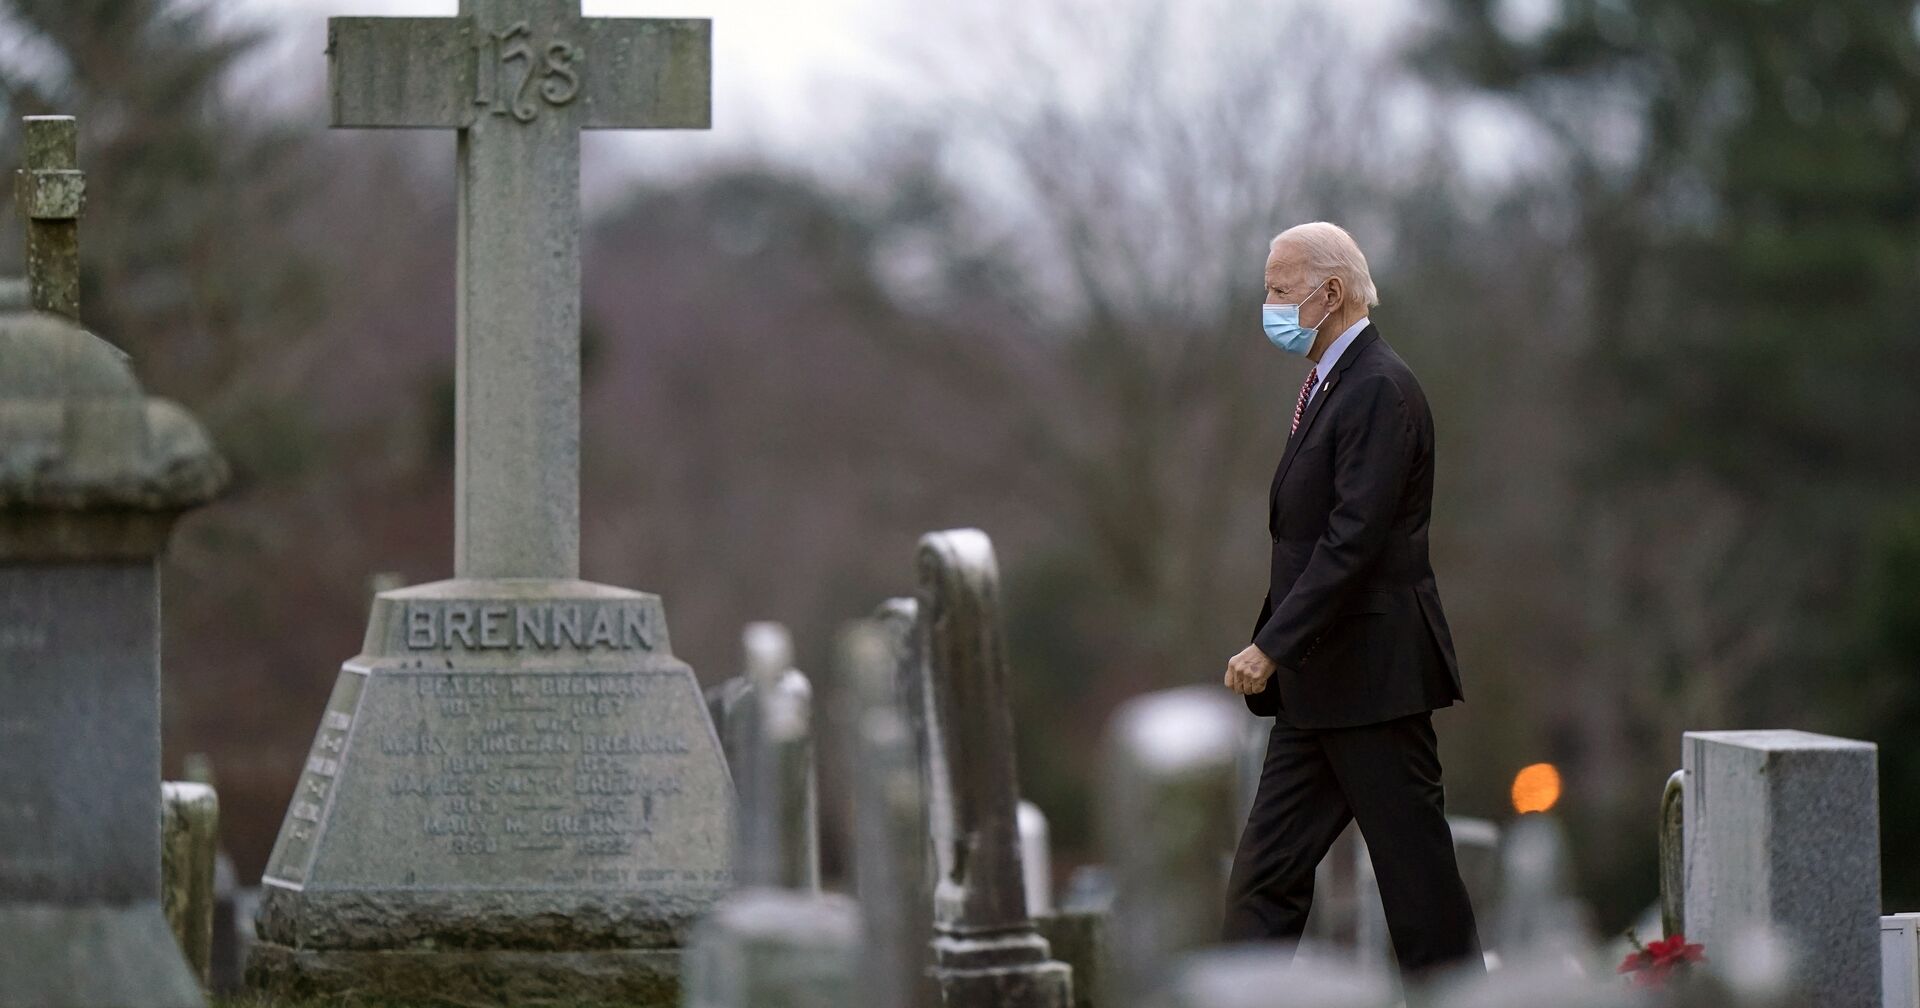 Избранный президент Джо Байден на кладбище в Уилмингтоне, Делавэр, США - ИноСМИ, 1920, 28.01.2021